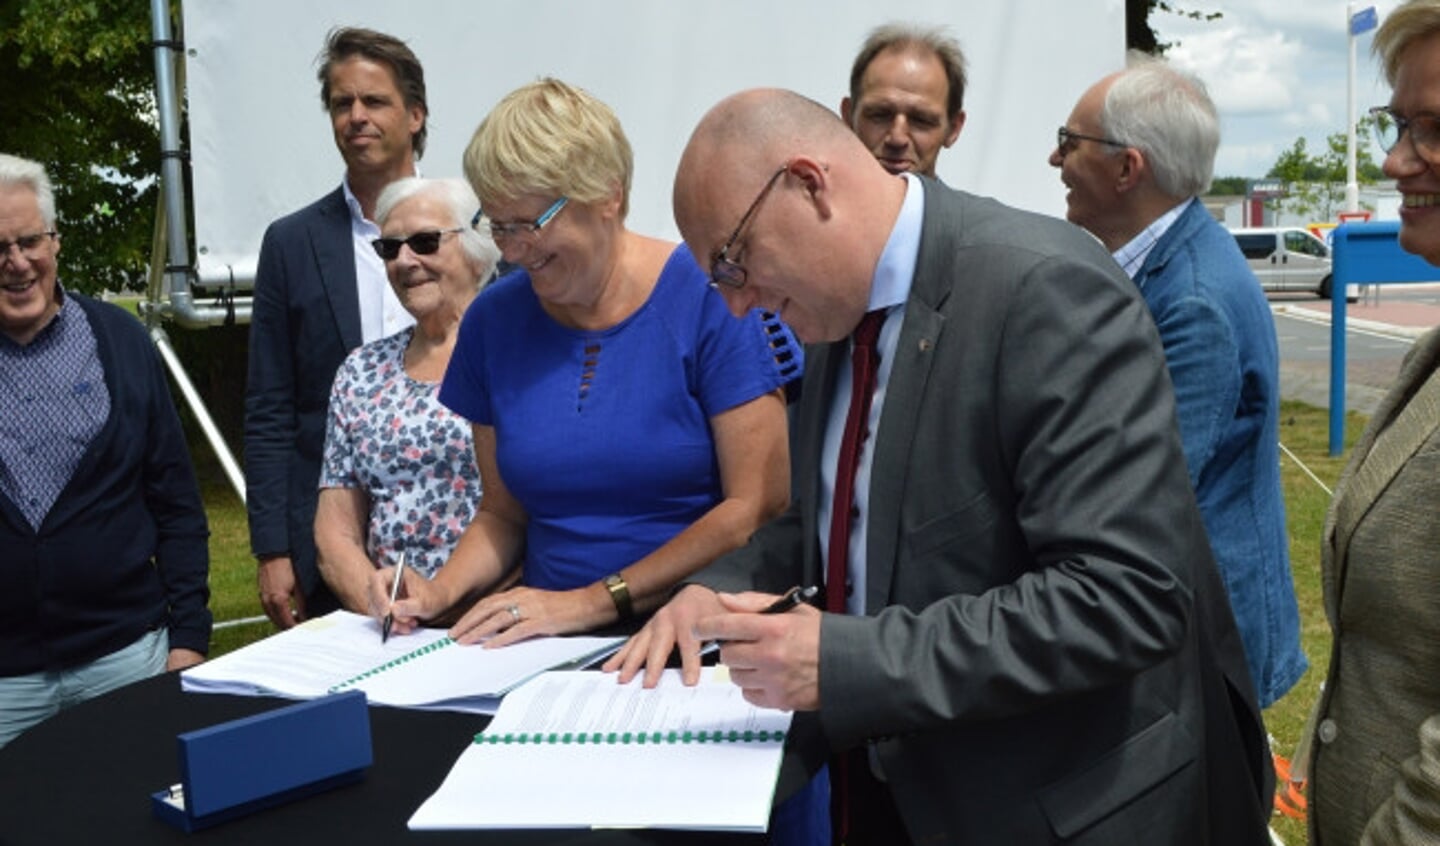 Toenmalig OFW-directeur Truus Sweringa en wethouder Peter van Bergen tekenden in 2019 de overeenkomst voor het MFC.